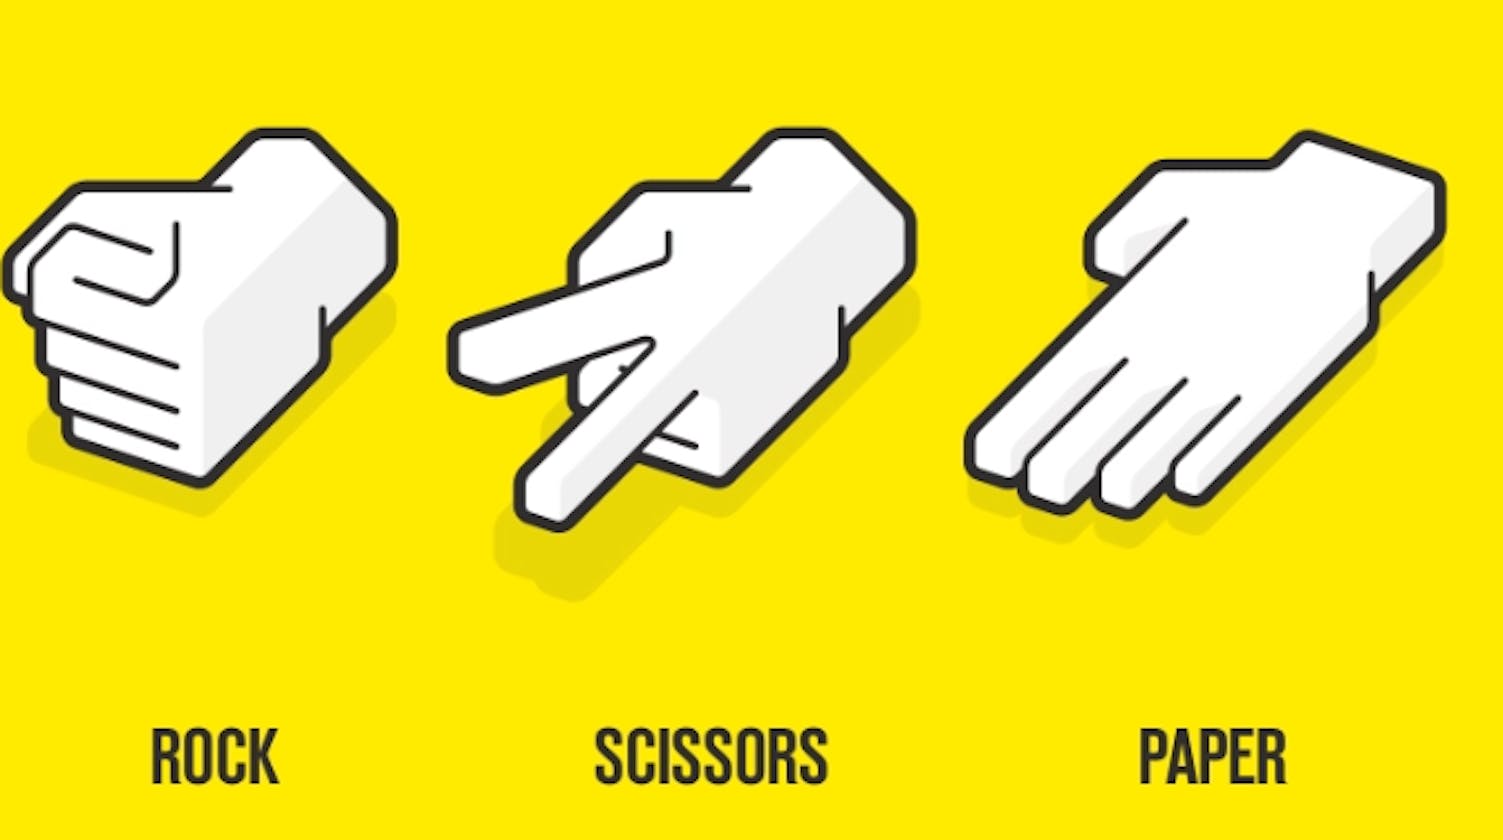 [JavaScript] Simple Rock Paper Scissors Game - Beginner Friendly